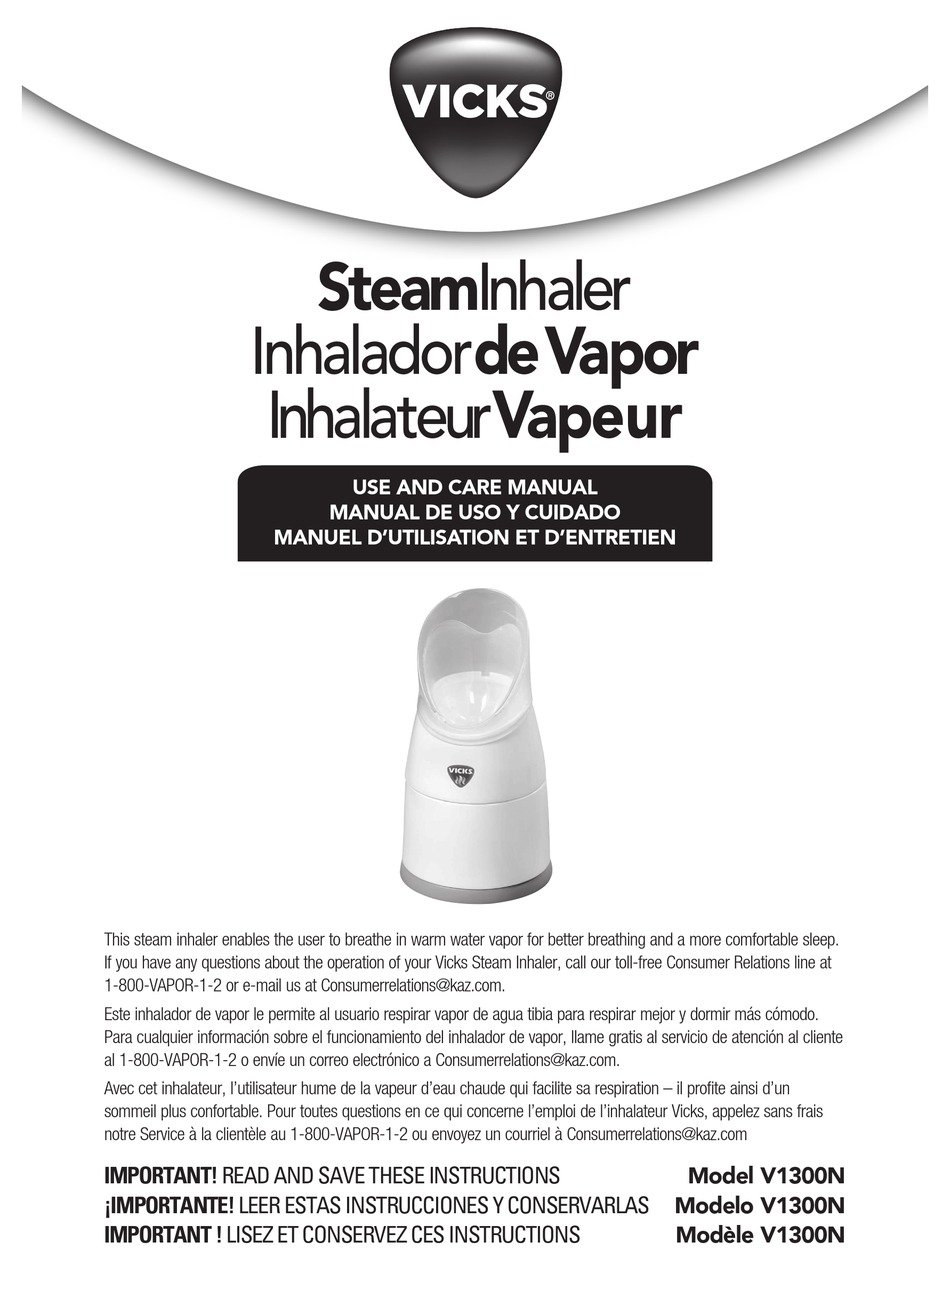 Inhalateur personnel de vapeur, 1 unité – Vicks